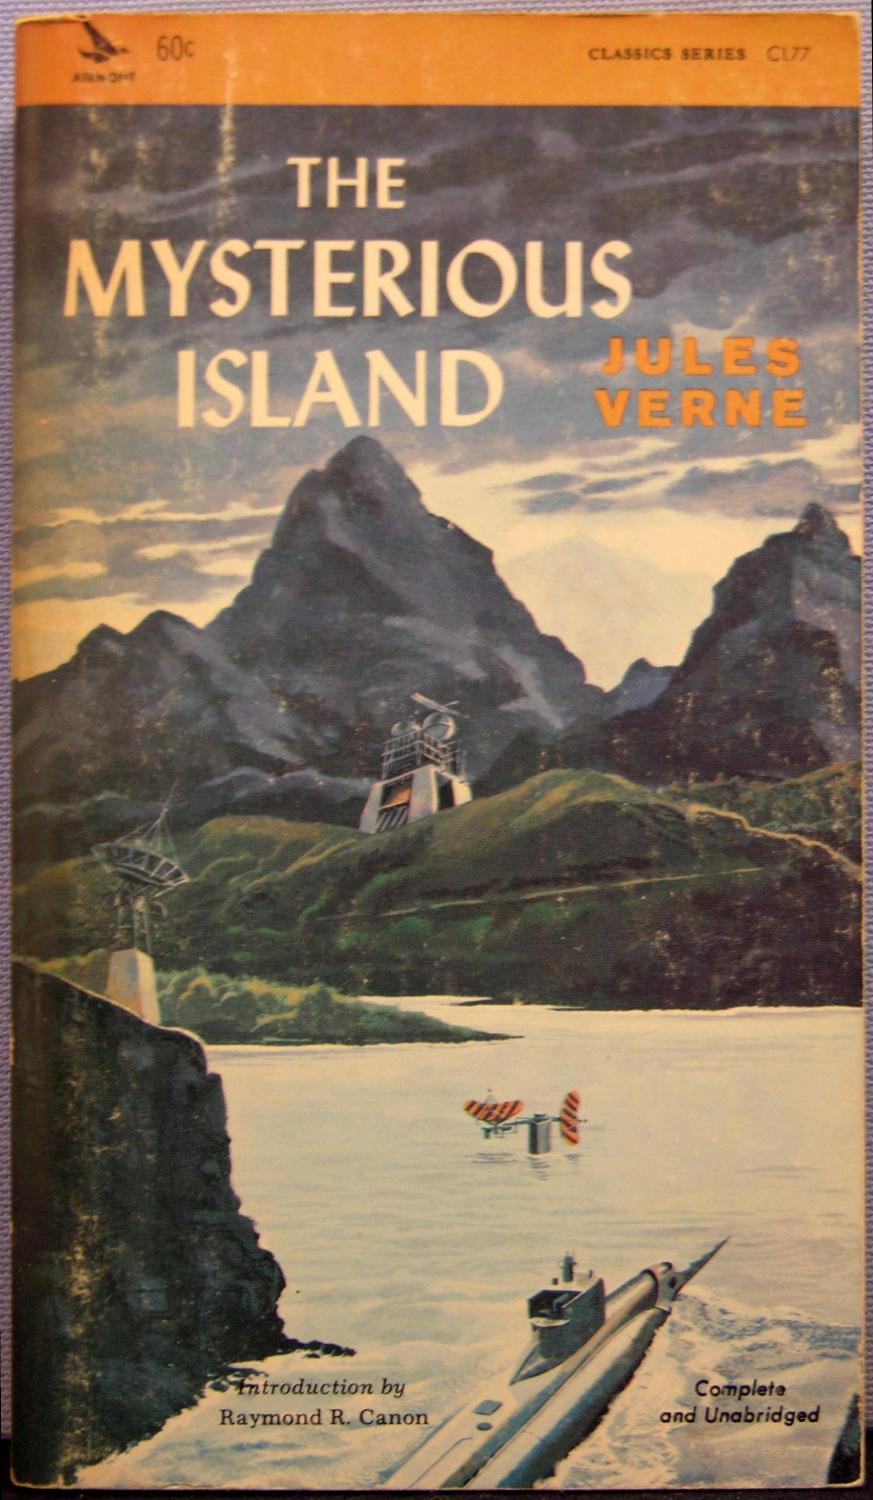 Island книга. Таинственный остров Жюль верна. Таинственный остров Жюль Верн книга. Книжка Жюль Верн таинственный остров. Таинственный остров обложка книги.